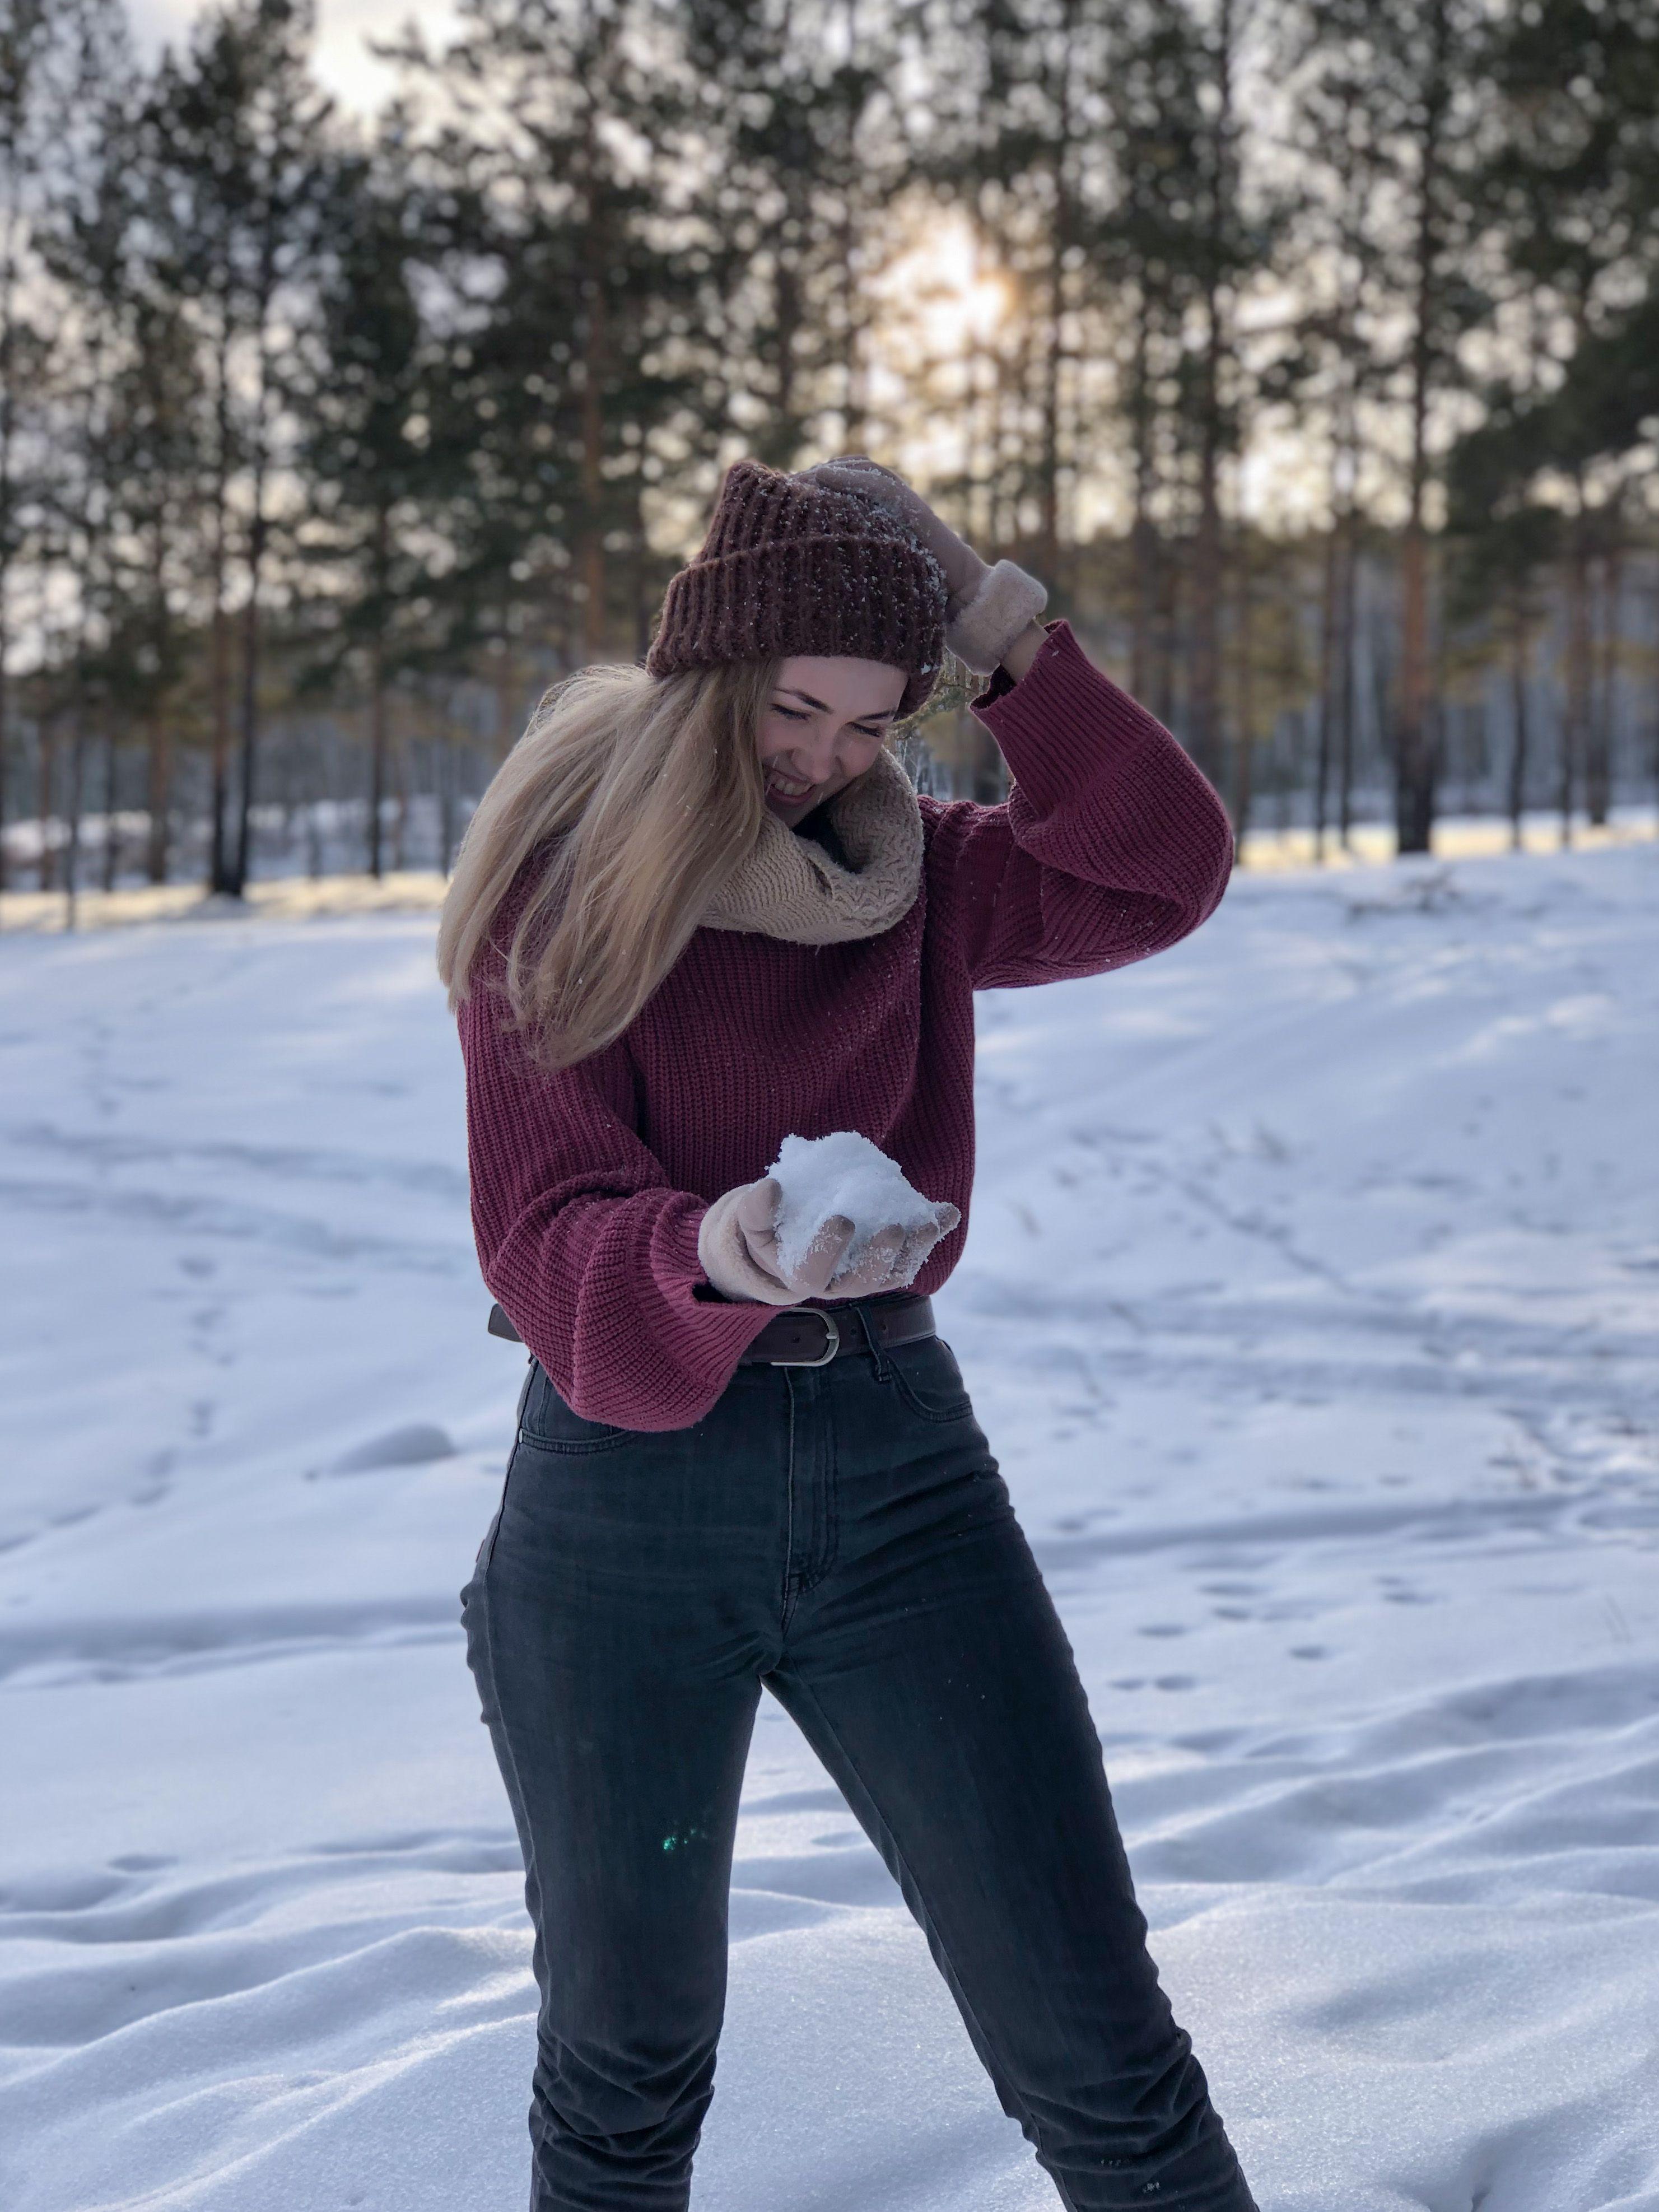 Красивая девушка в лесу зимой | Красивые девушки, Идеи для фото, Закаты